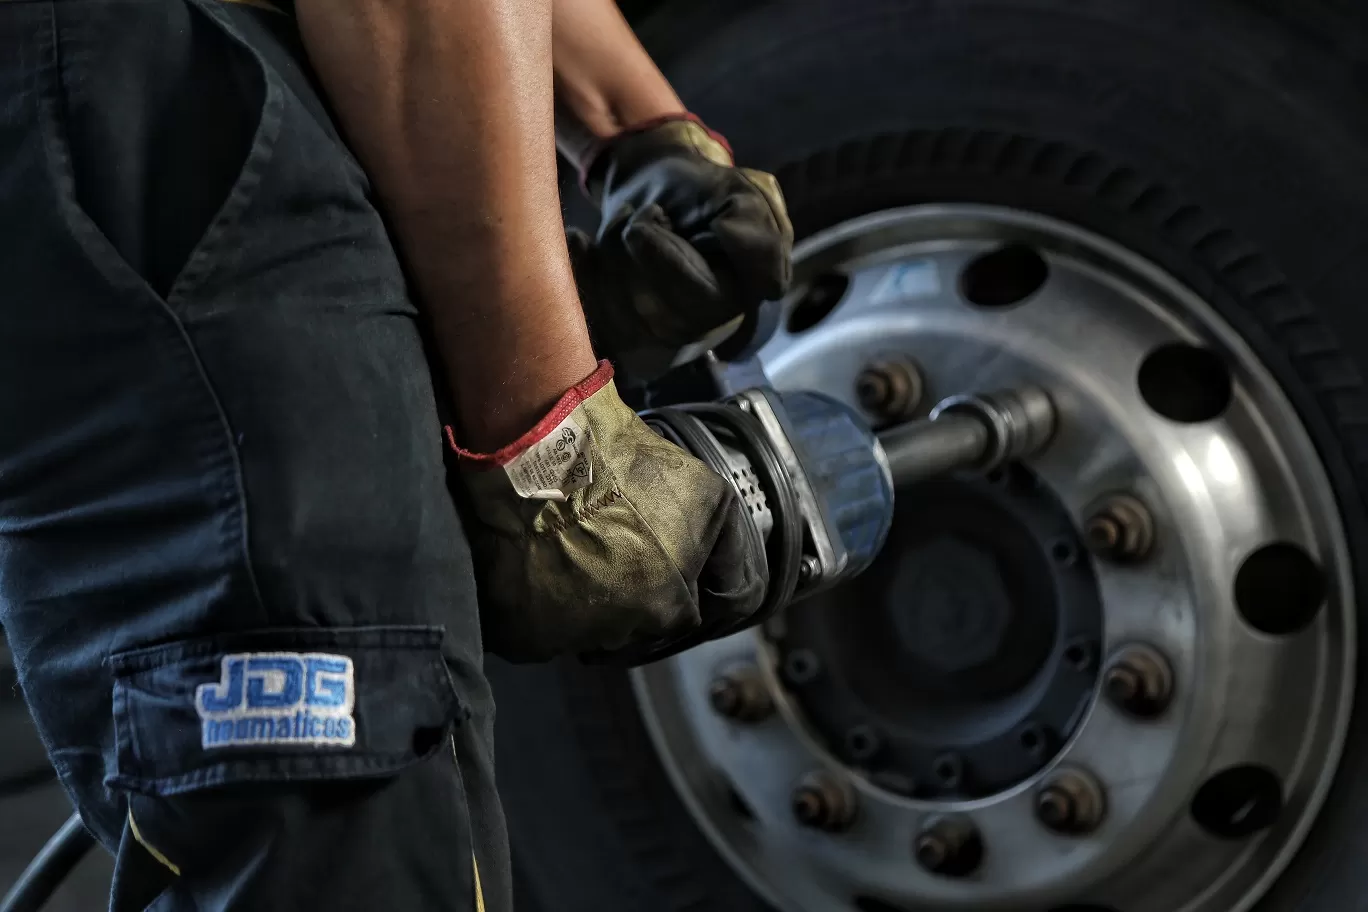 JDG neumáticos te brinda calidad, durabilidad y confort en cada uno de sus productos y servicios.